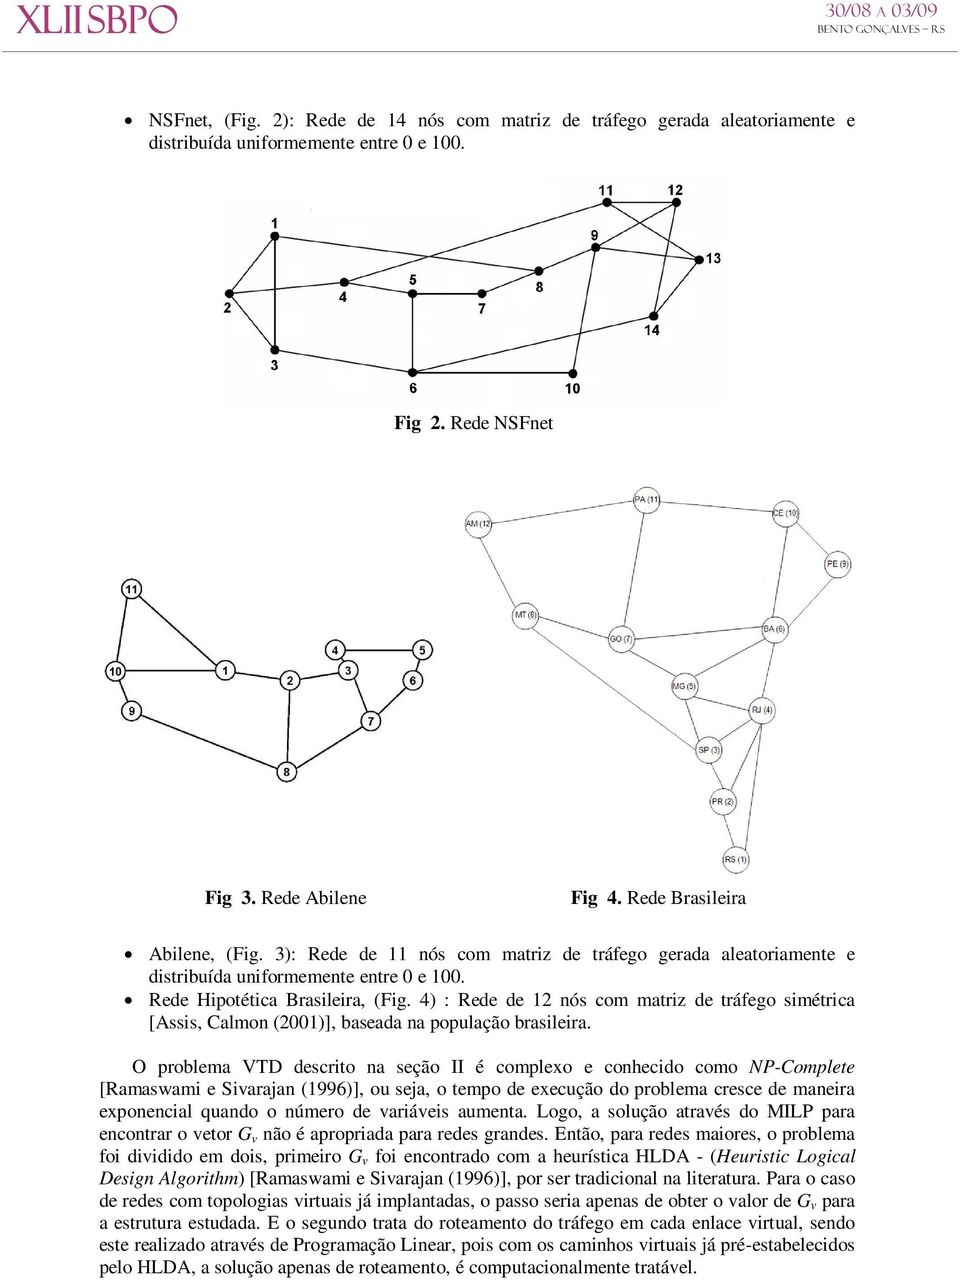 4) : Rede de 12 nós com matriz de tráfego simétrica [Assis, Calmon (2001)], baseada na população brasileira.